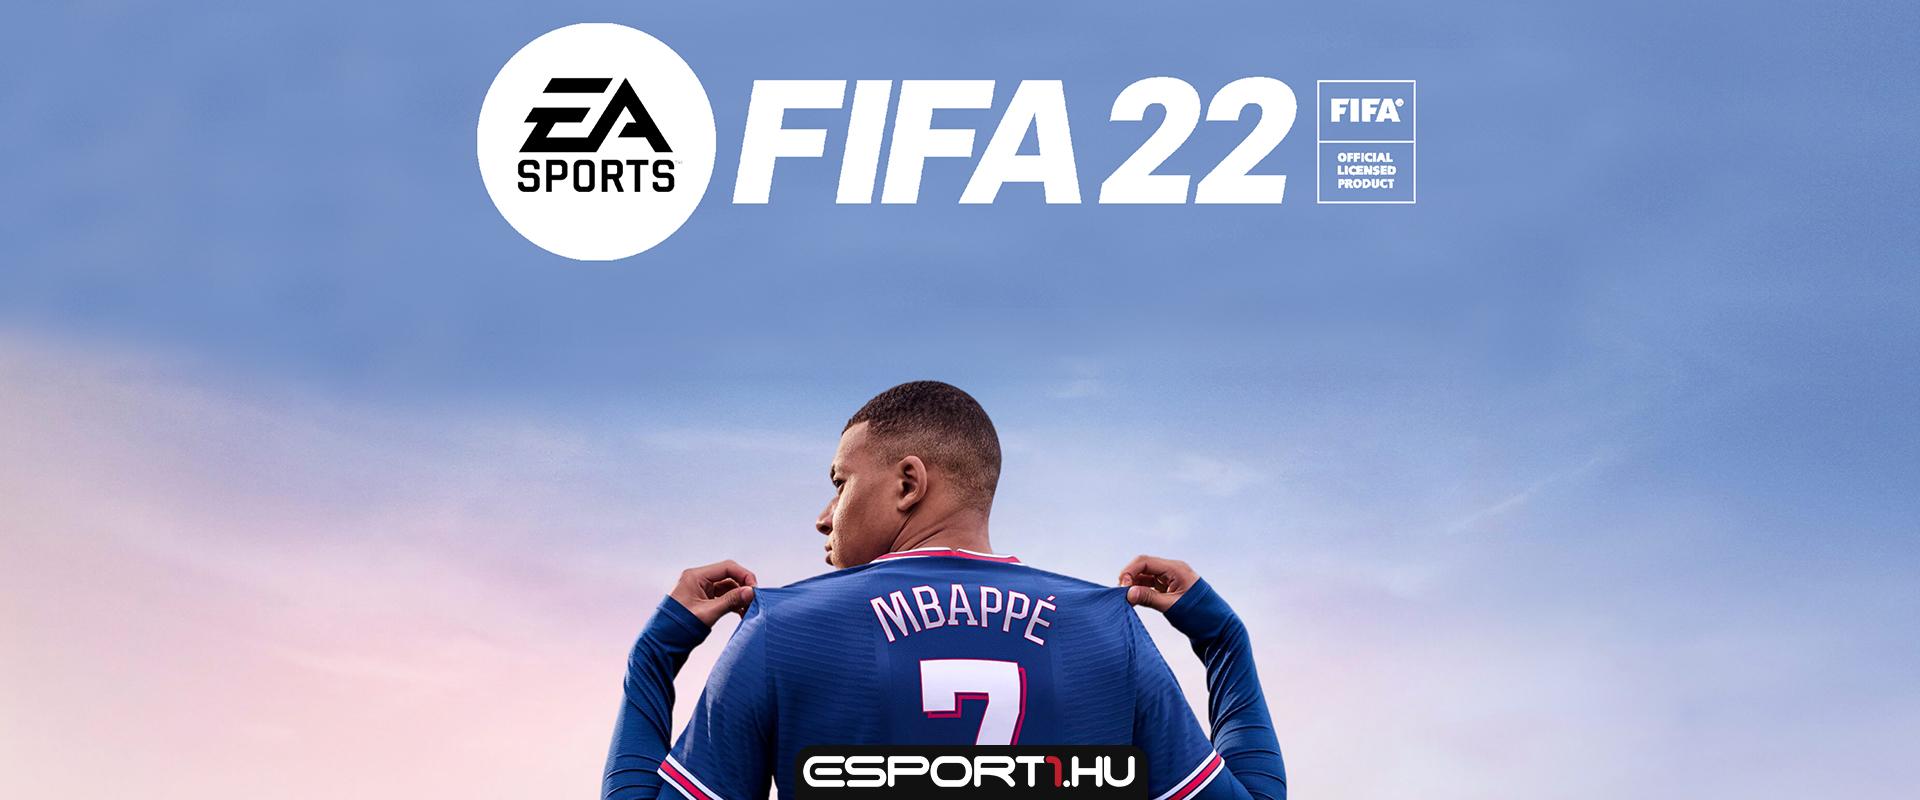 Ingyenesen játszható a FIFA 22 – Nincs már sok hátra, csapjatok le rá amíg lehet